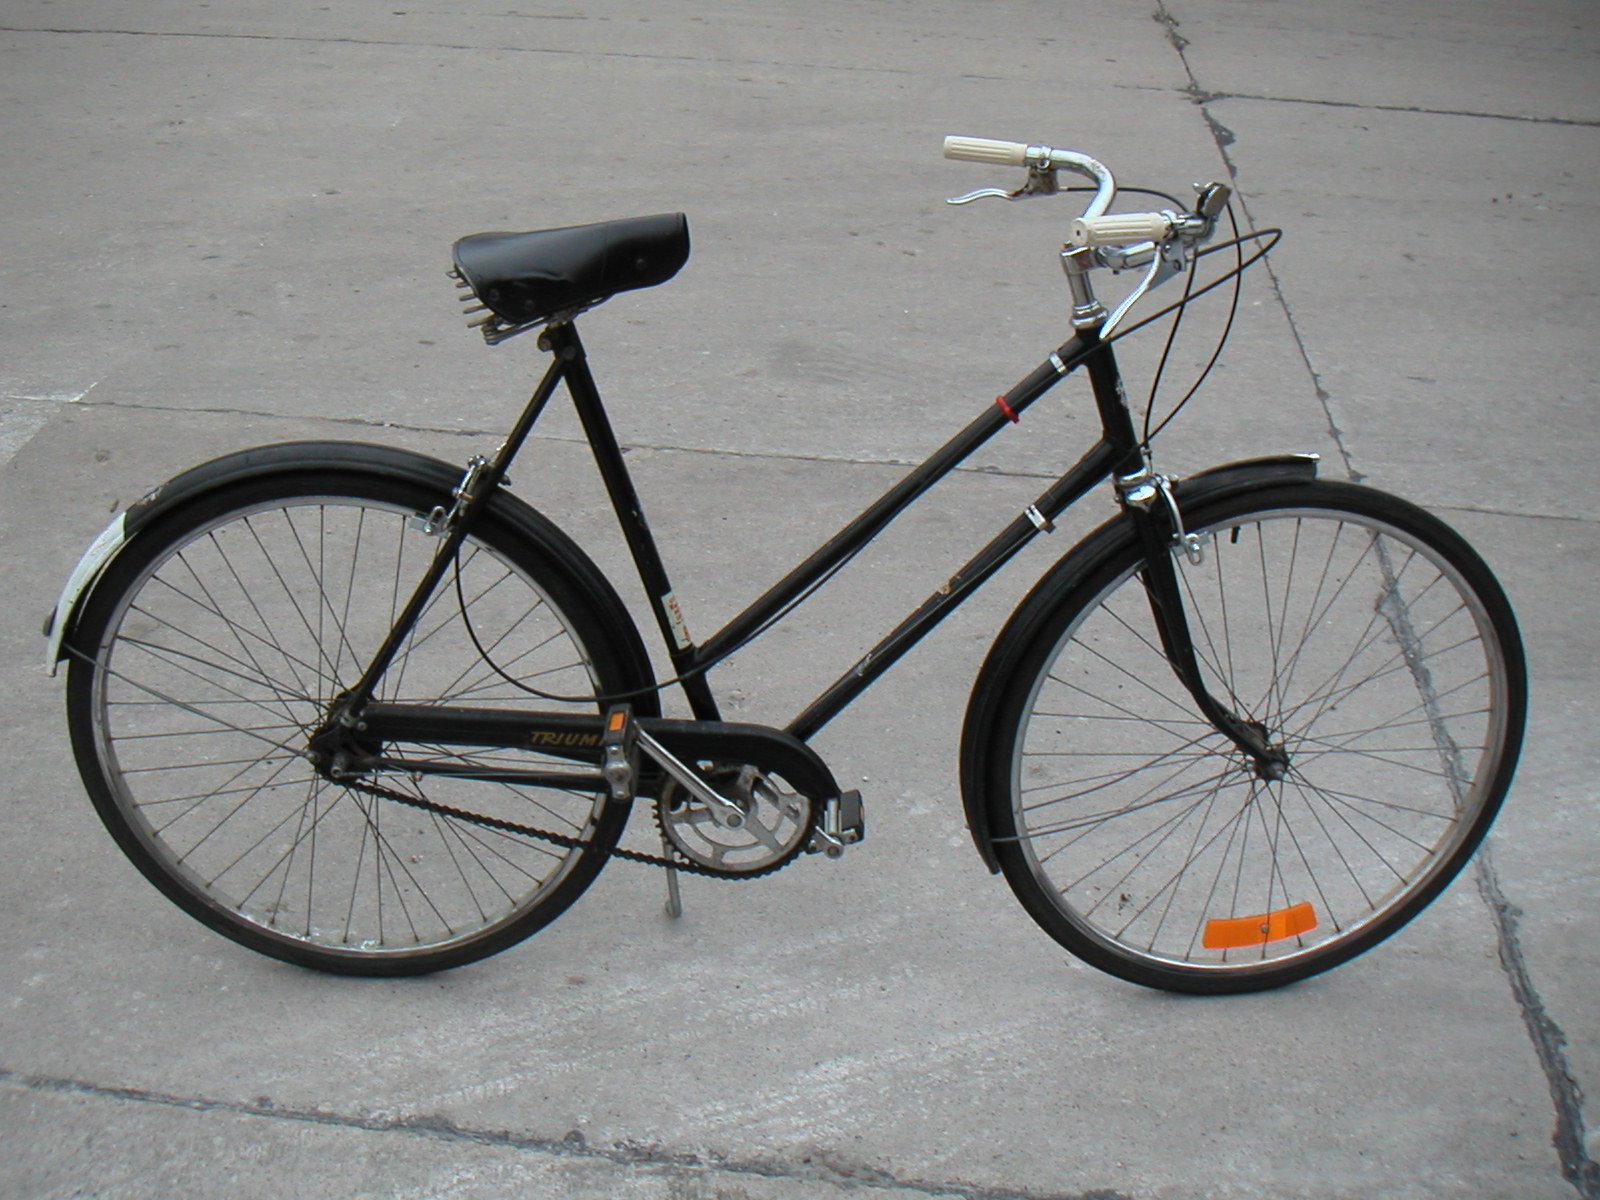 ข้อมูลเพิ่มเติมของ แฮนด์ จักรยานสแตนดาร์ด จักรยานวินเทจ แฮนด์หนวด ทรงโค้งเข้าหาตัว ทรงคลาสสิค